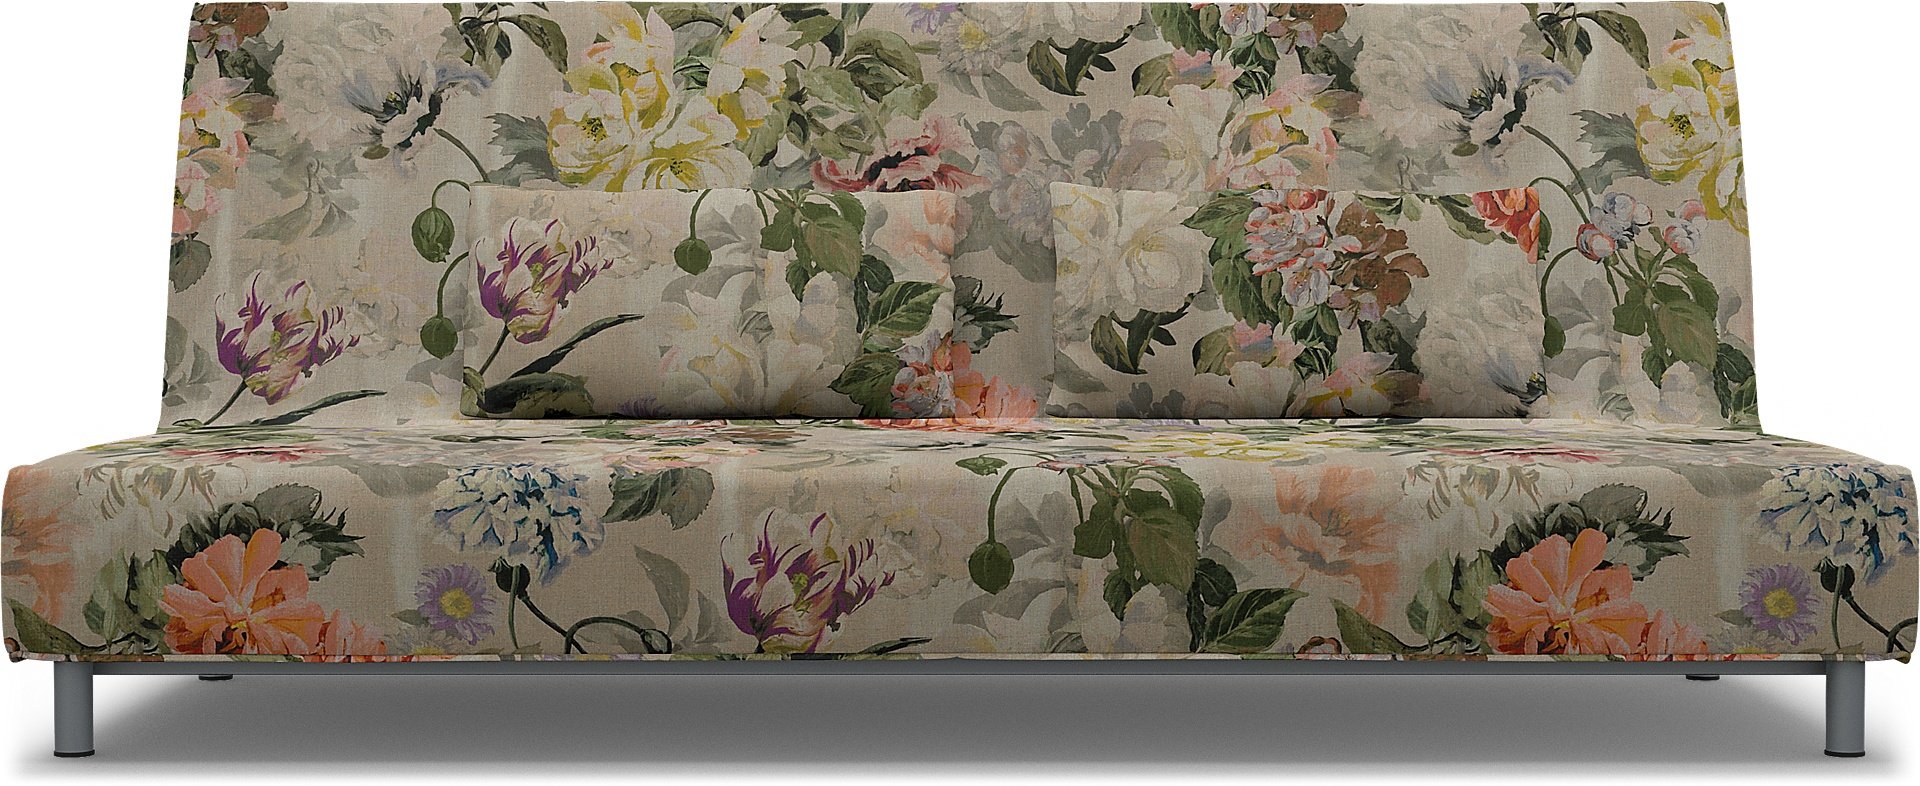 IKEA - Beddinge Sofa Bed Cover, Delft Flower - Tuberose, Linen - Bemz